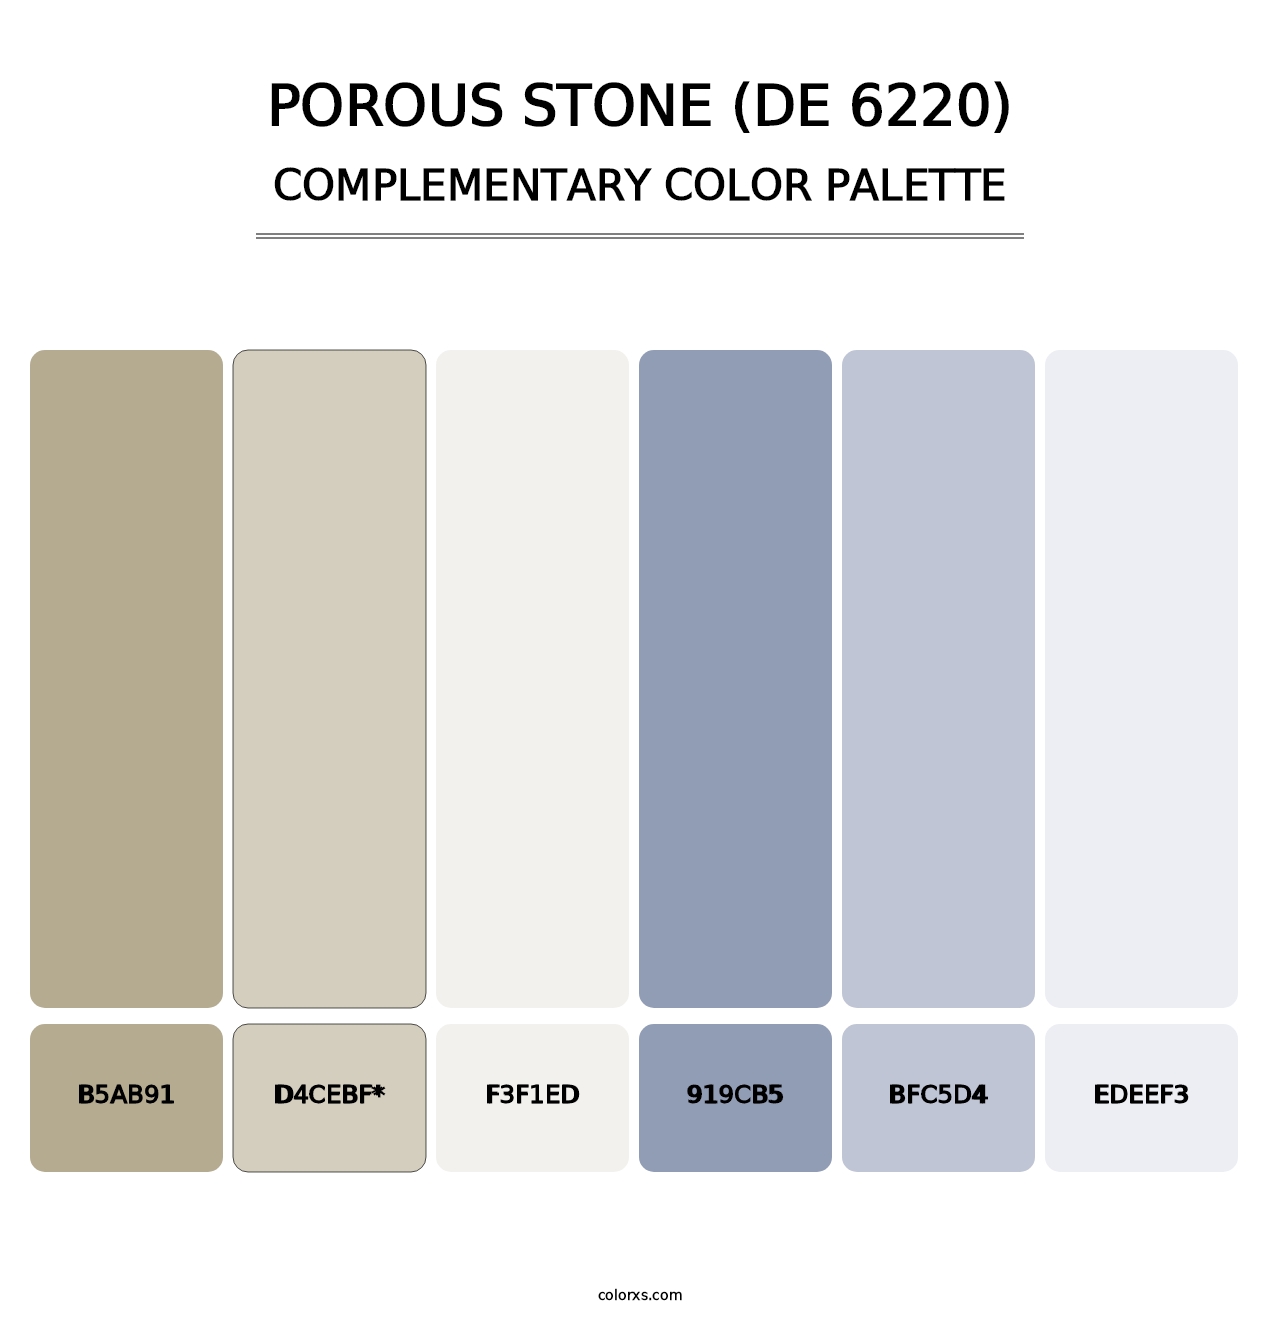 Porous Stone (DE 6220) - Complementary Color Palette